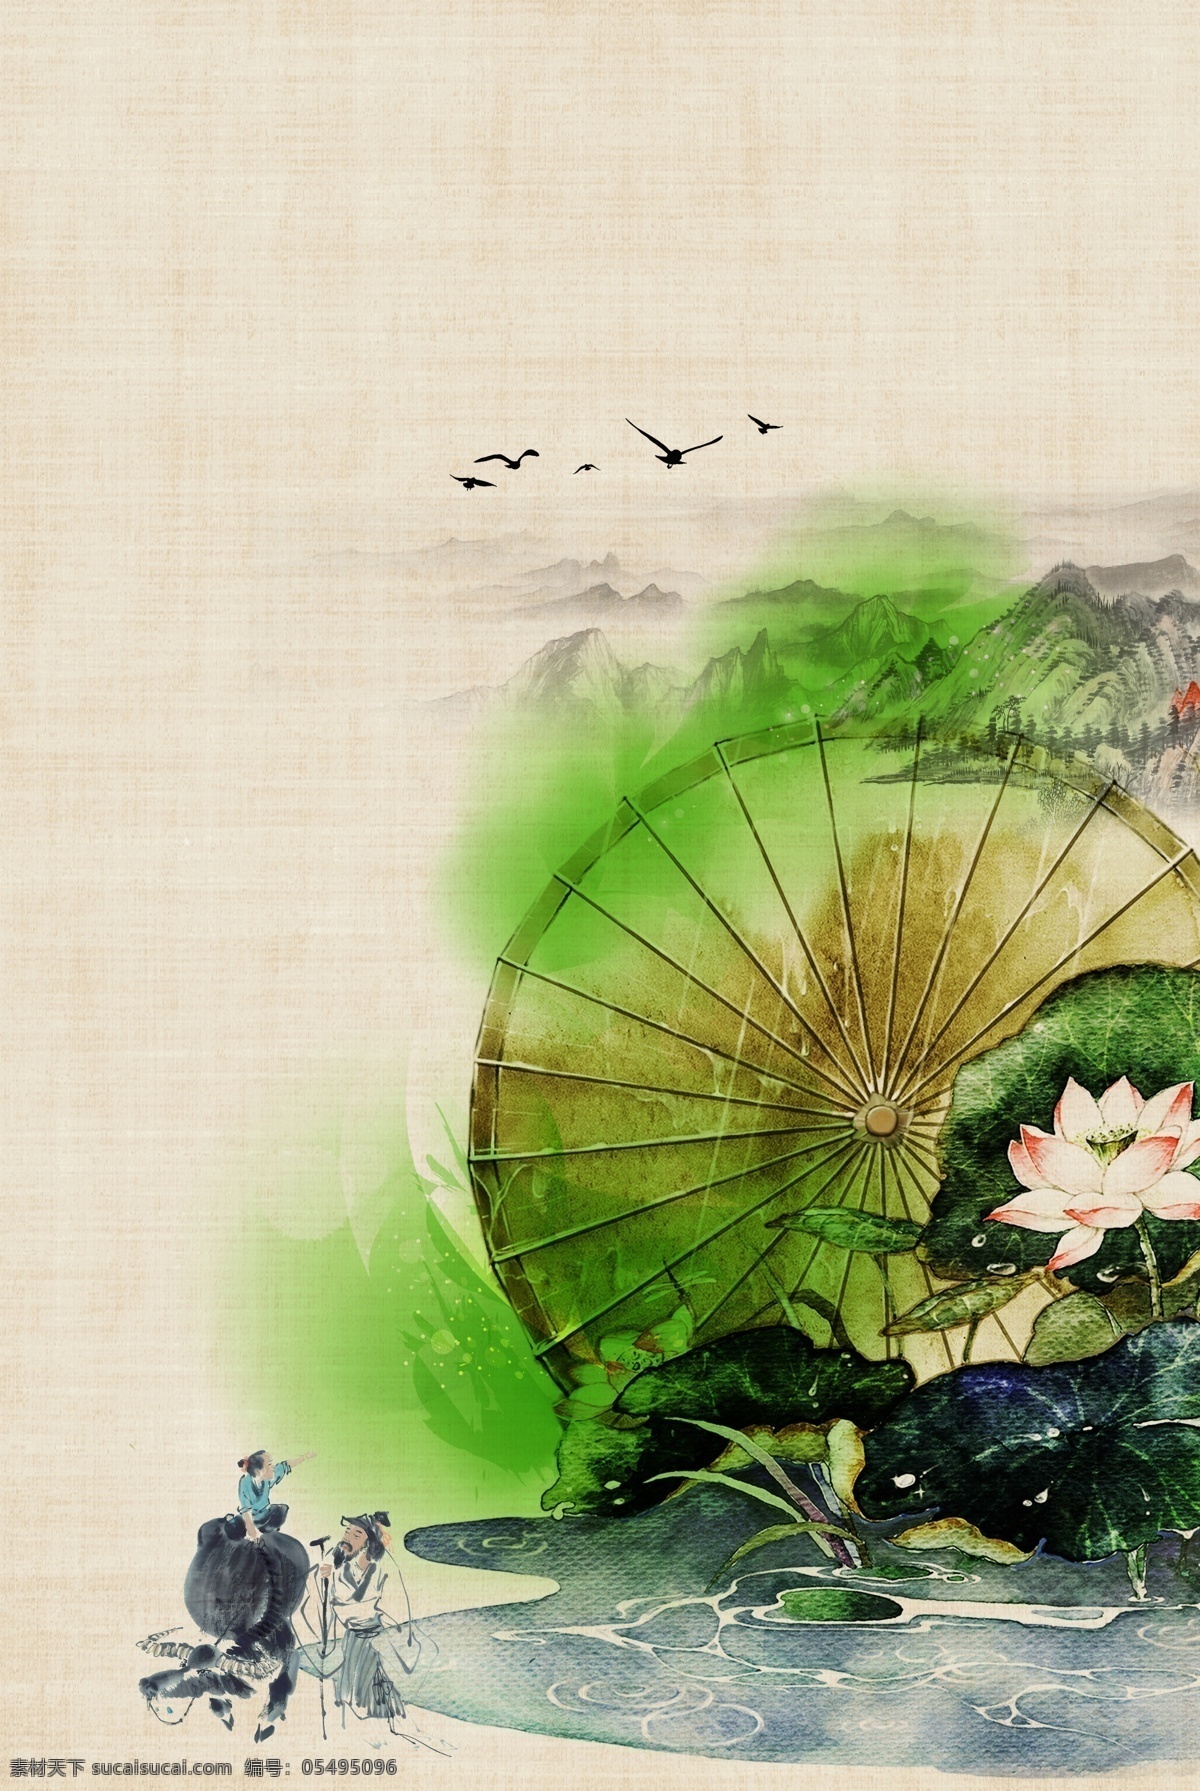 文艺 浪漫 古风 海报 背景 典雅 复古 中国风 质感 纹理 质朴 水墨